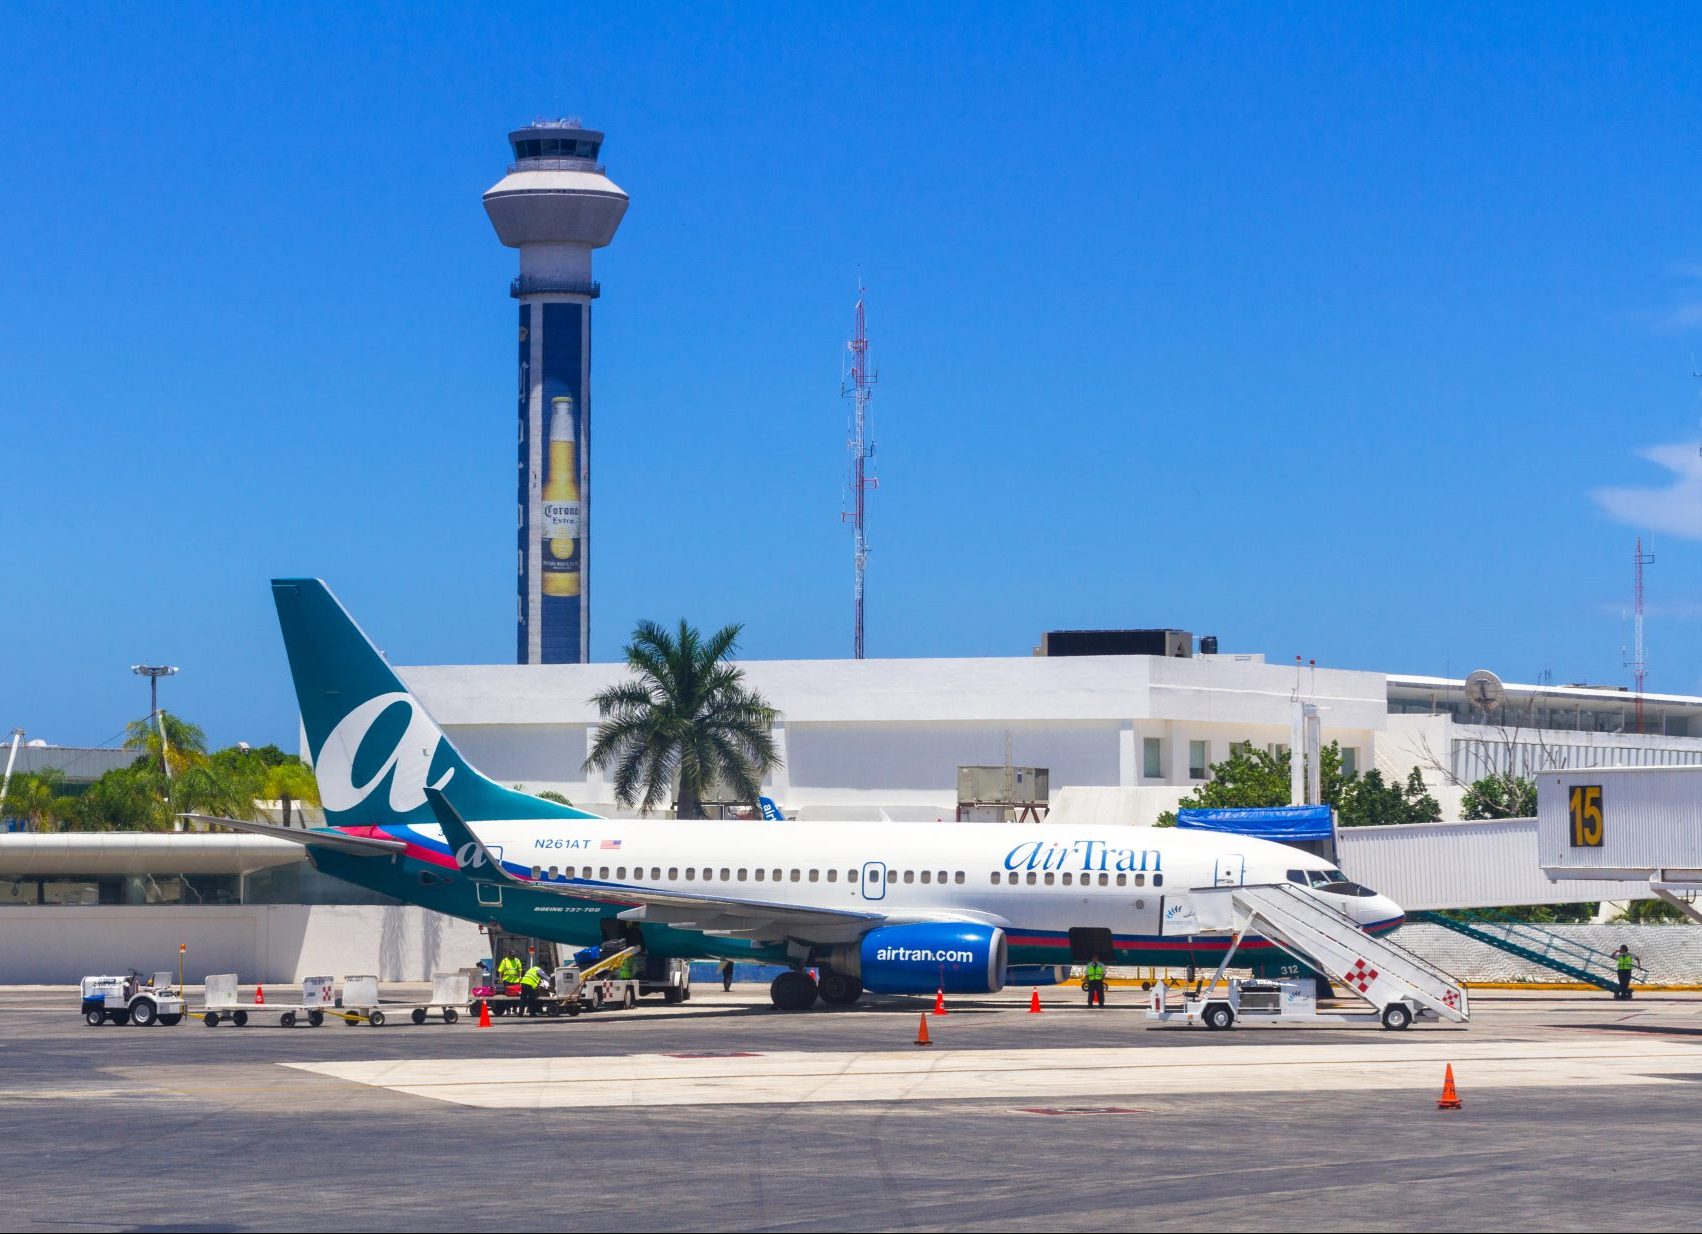 Aeropuerto de Cancún líder en turismo internacional en México, supera al AICM